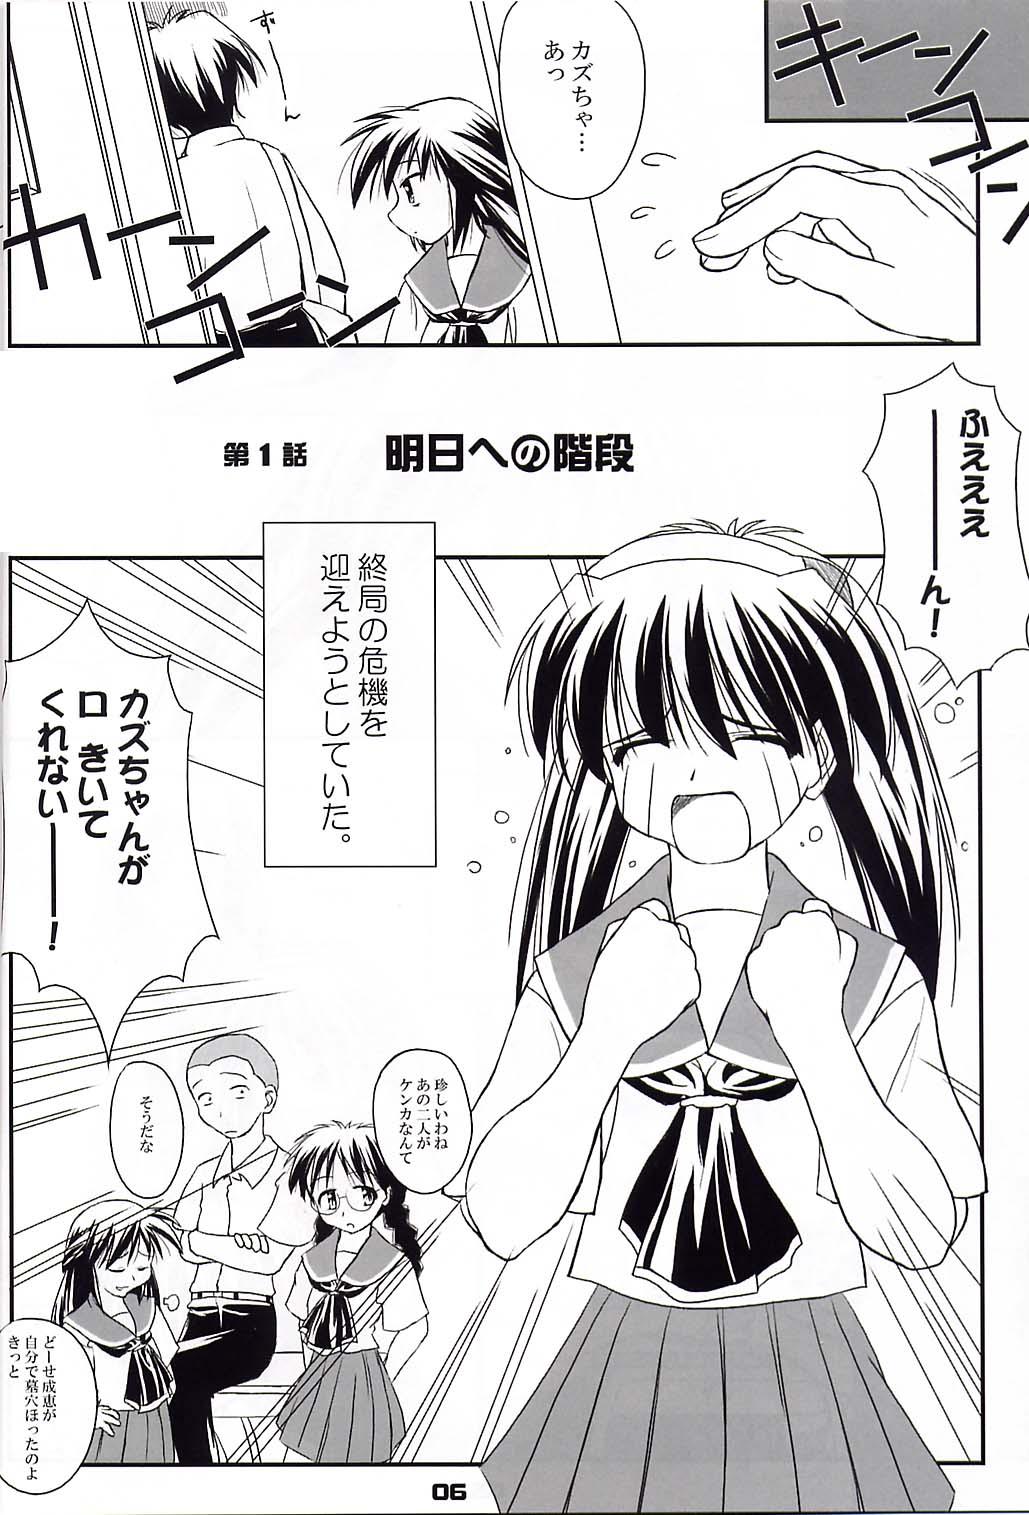 Japan Heikou Uchuu Icchoume 1 - Narue no sekai Toilet - Page 5